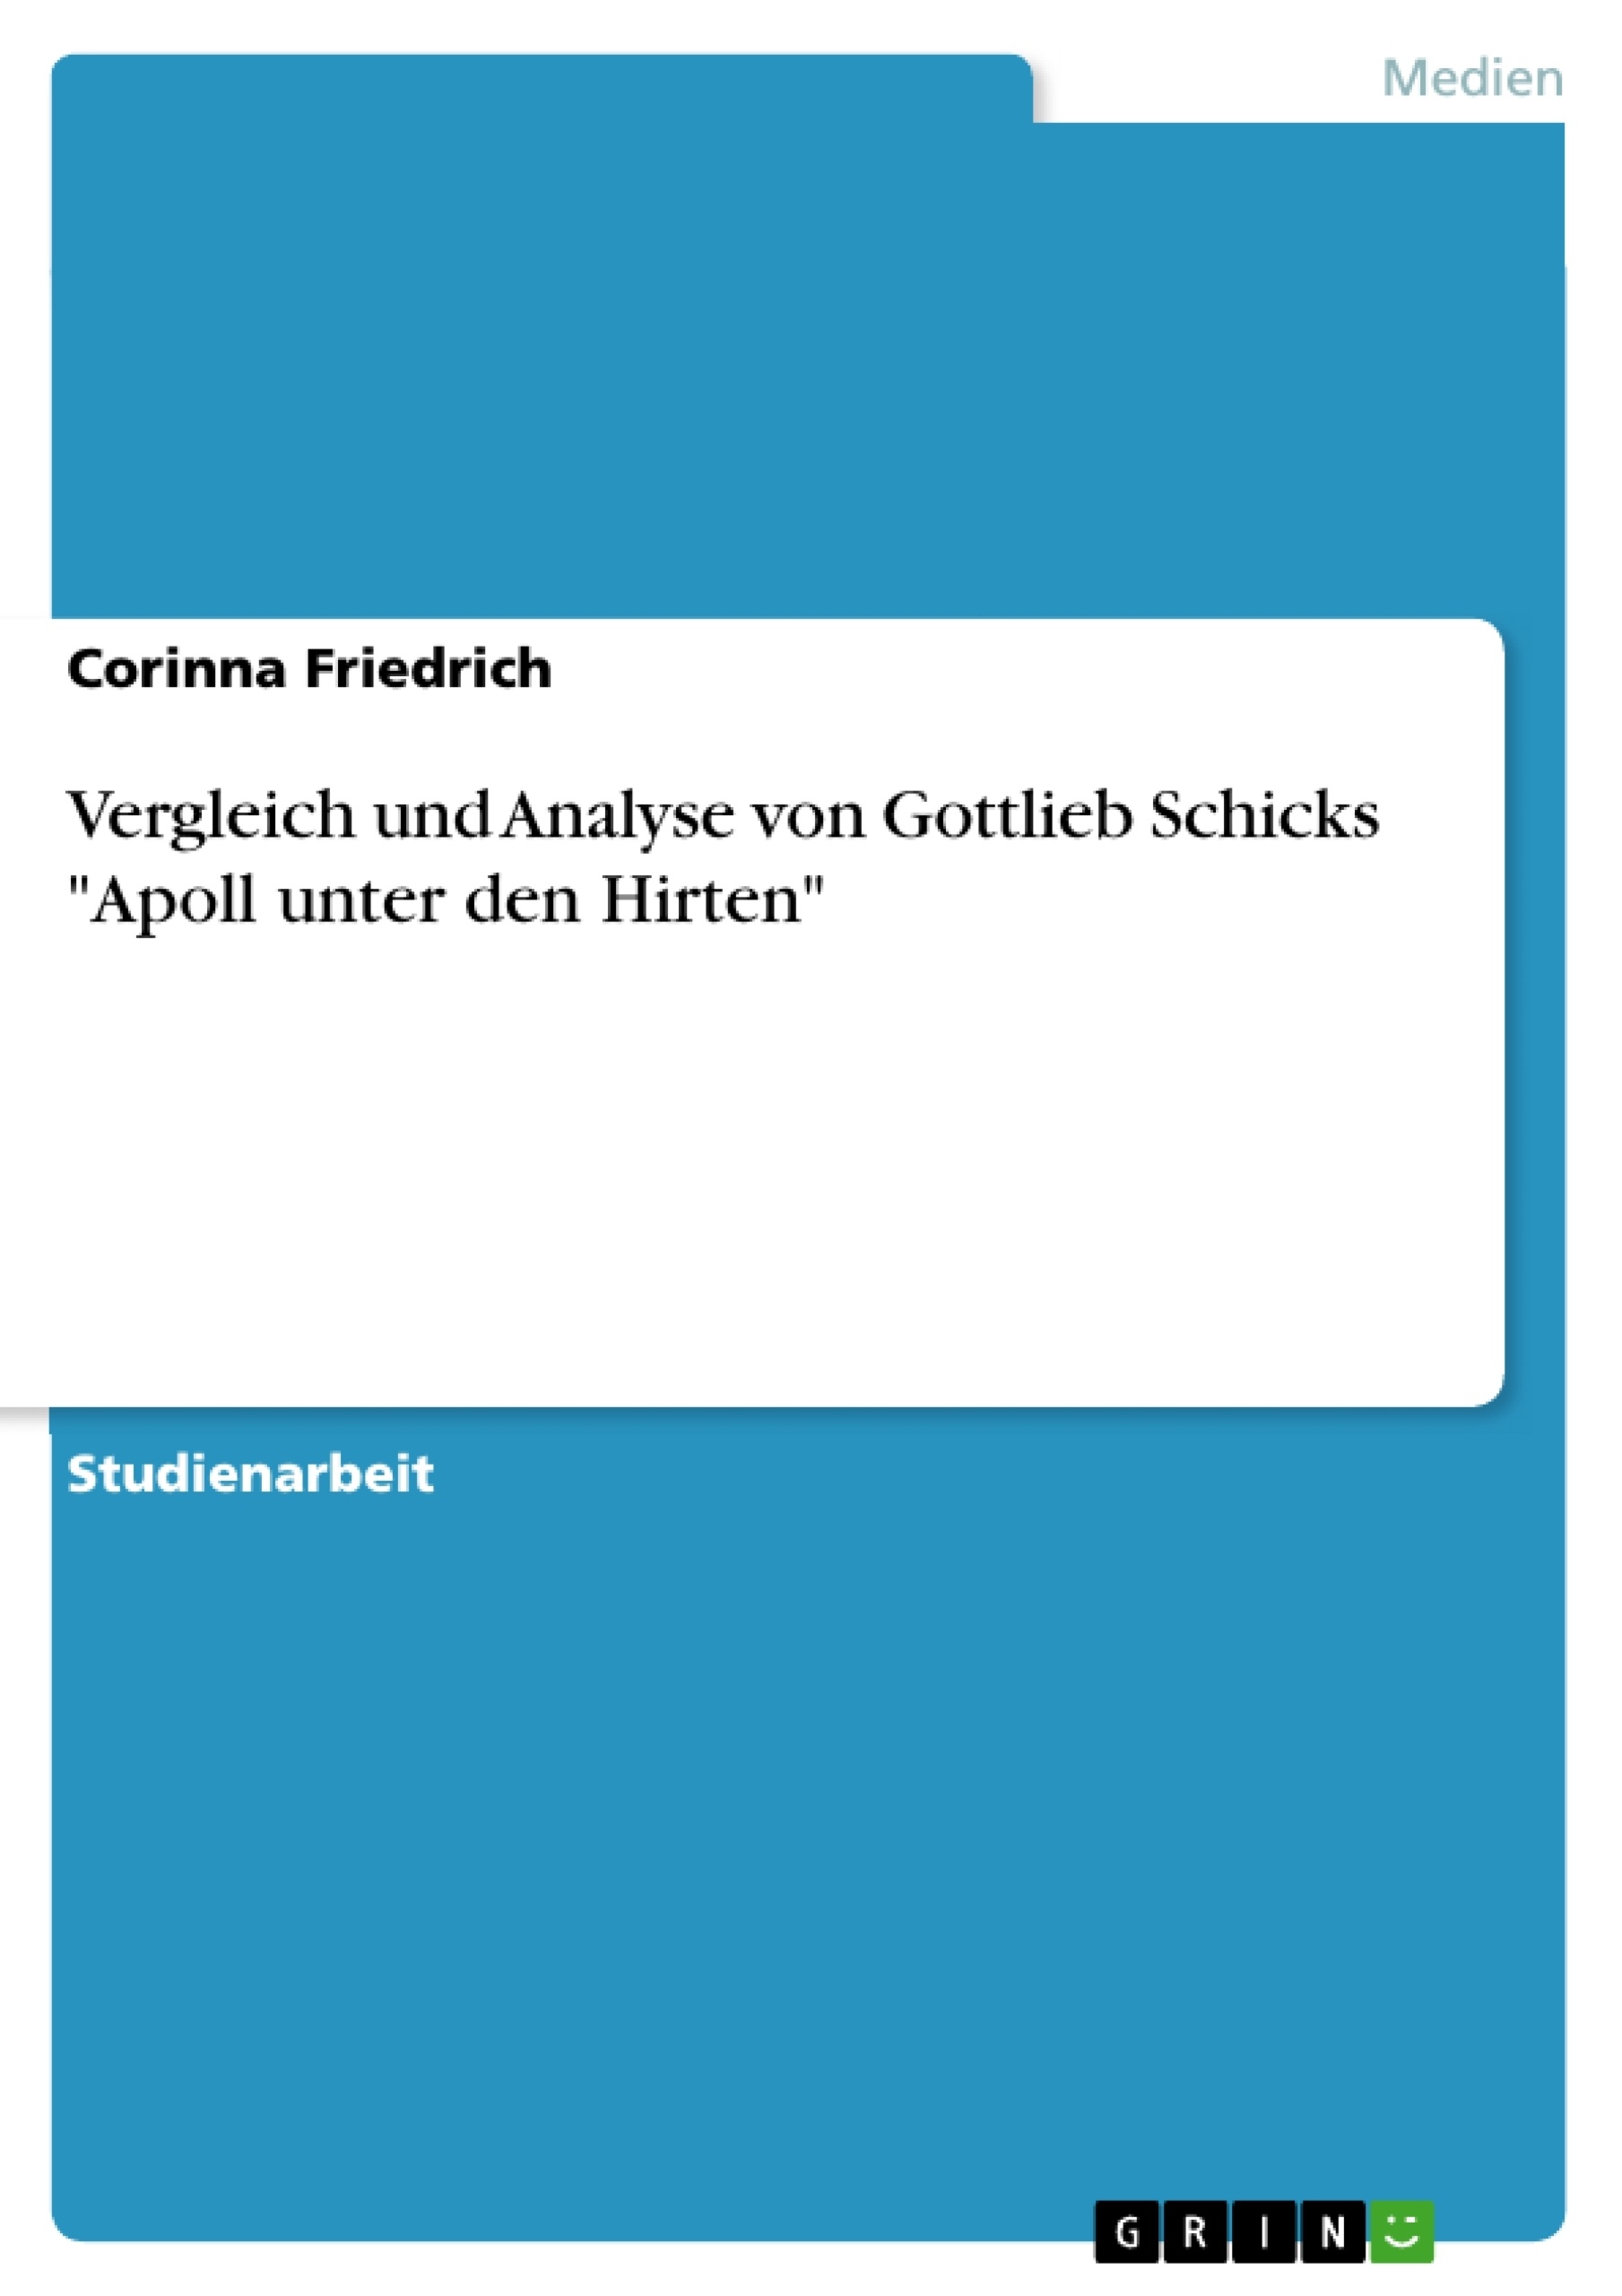 Título: Vergleich und Analyse von Gottlieb Schicks "Apoll unter den Hirten"